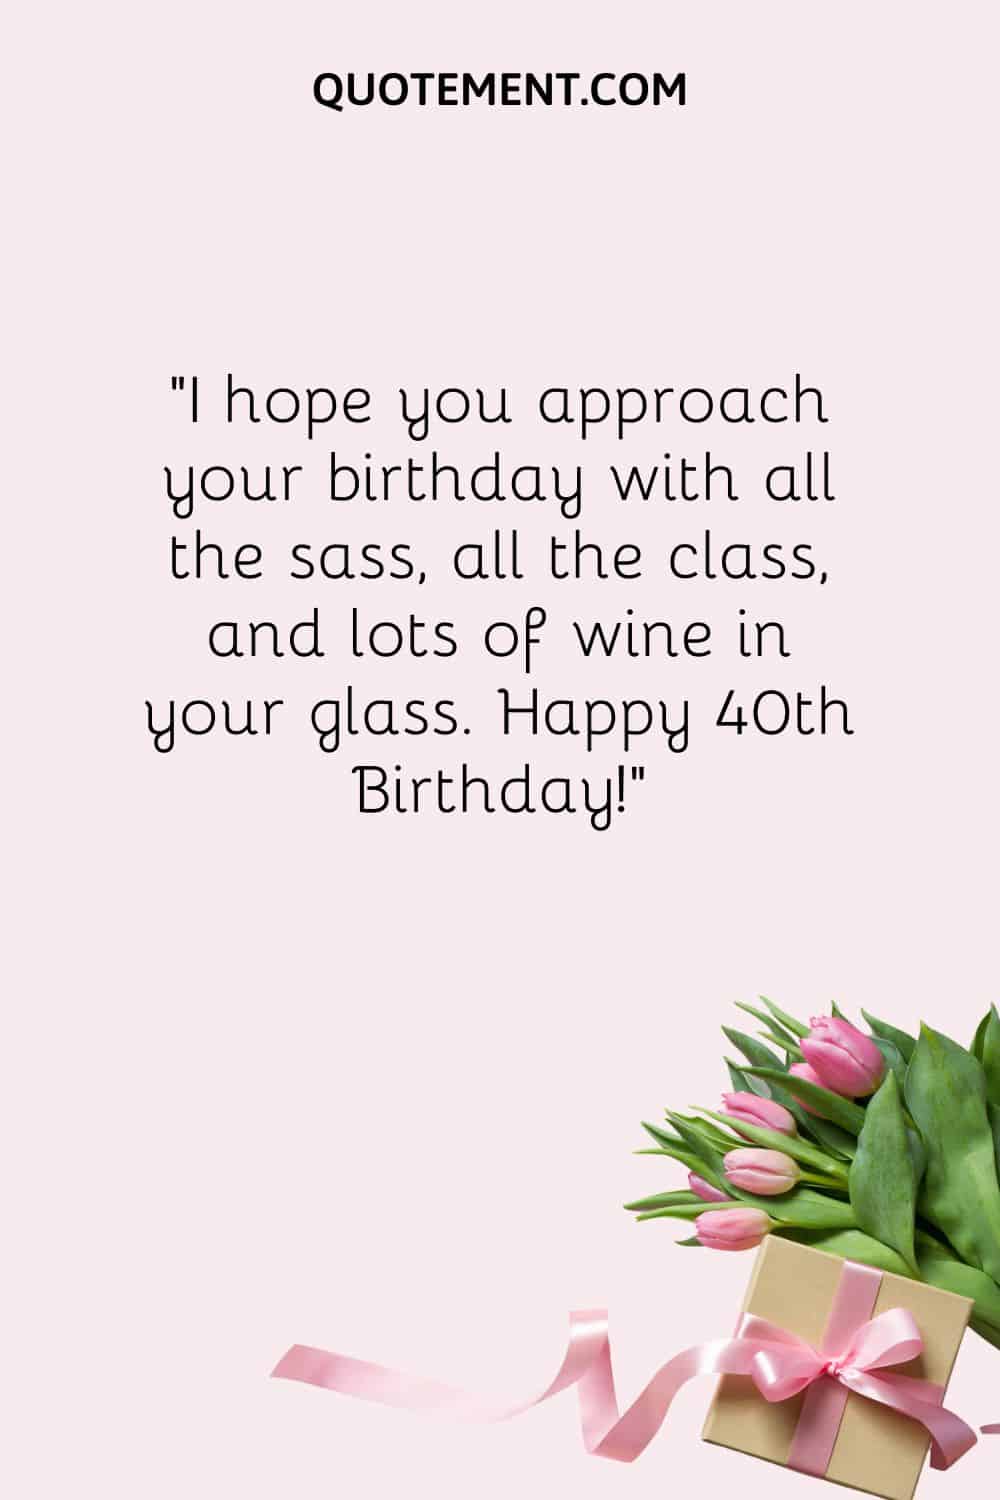 Espero que afrontes tu cumpleaños con todo el descaro, toda la clase y mucho vino en tu copa.